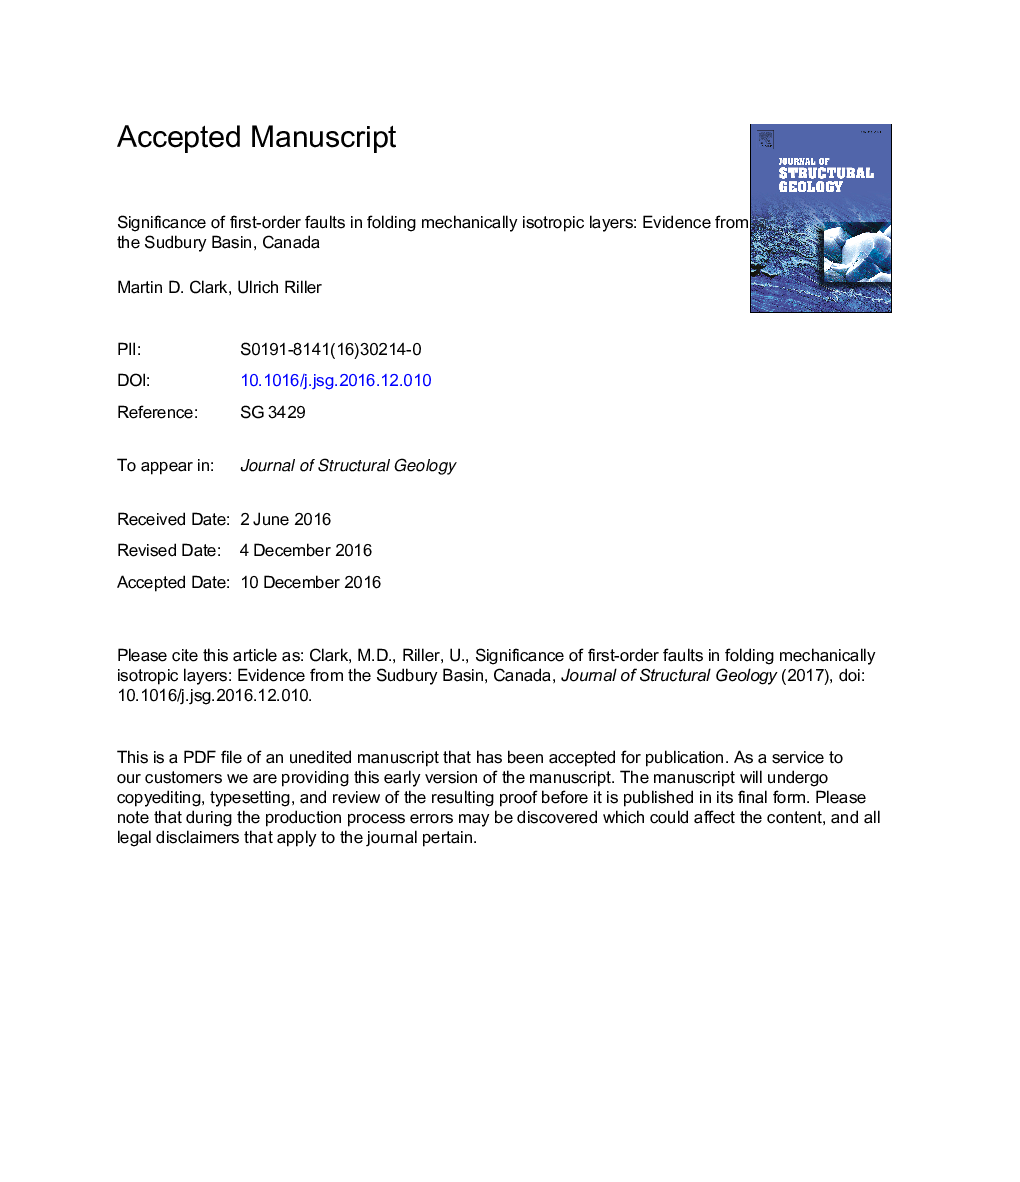 اهمیت گسل های مرتبه اول در لایه های ایزوتروپیک مکانیکی تاشو: شواهد از حوض سودبیر، کانادا